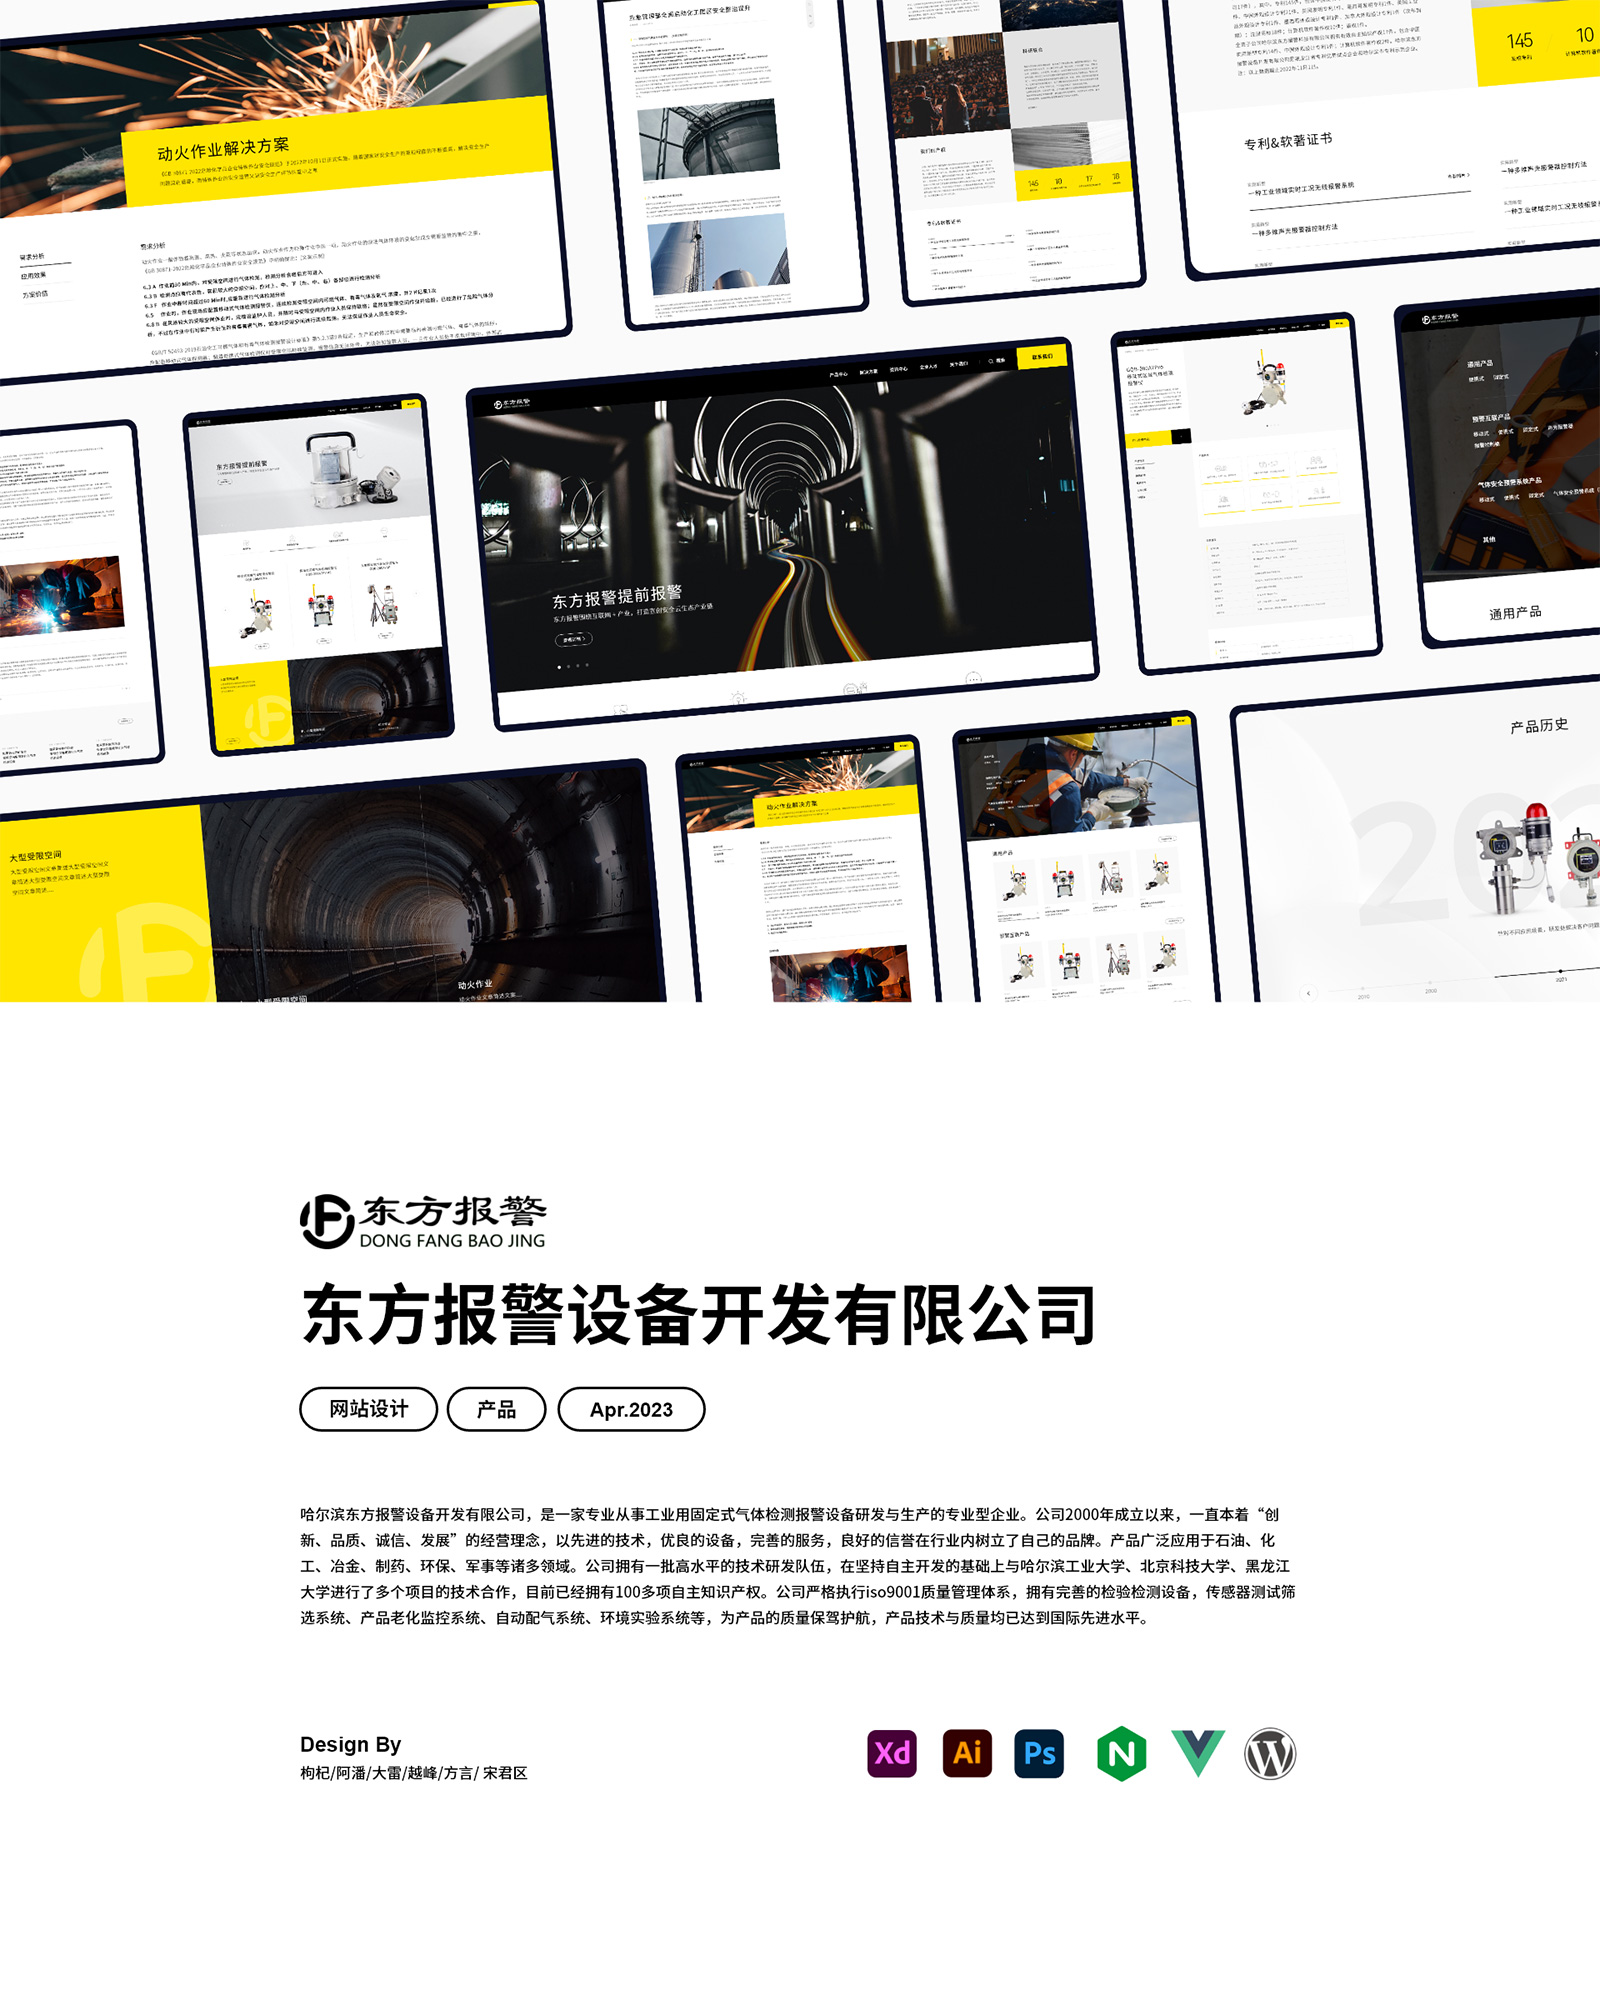 哈尔滨东方报警设备官网定制设计网站0-素马设计作品